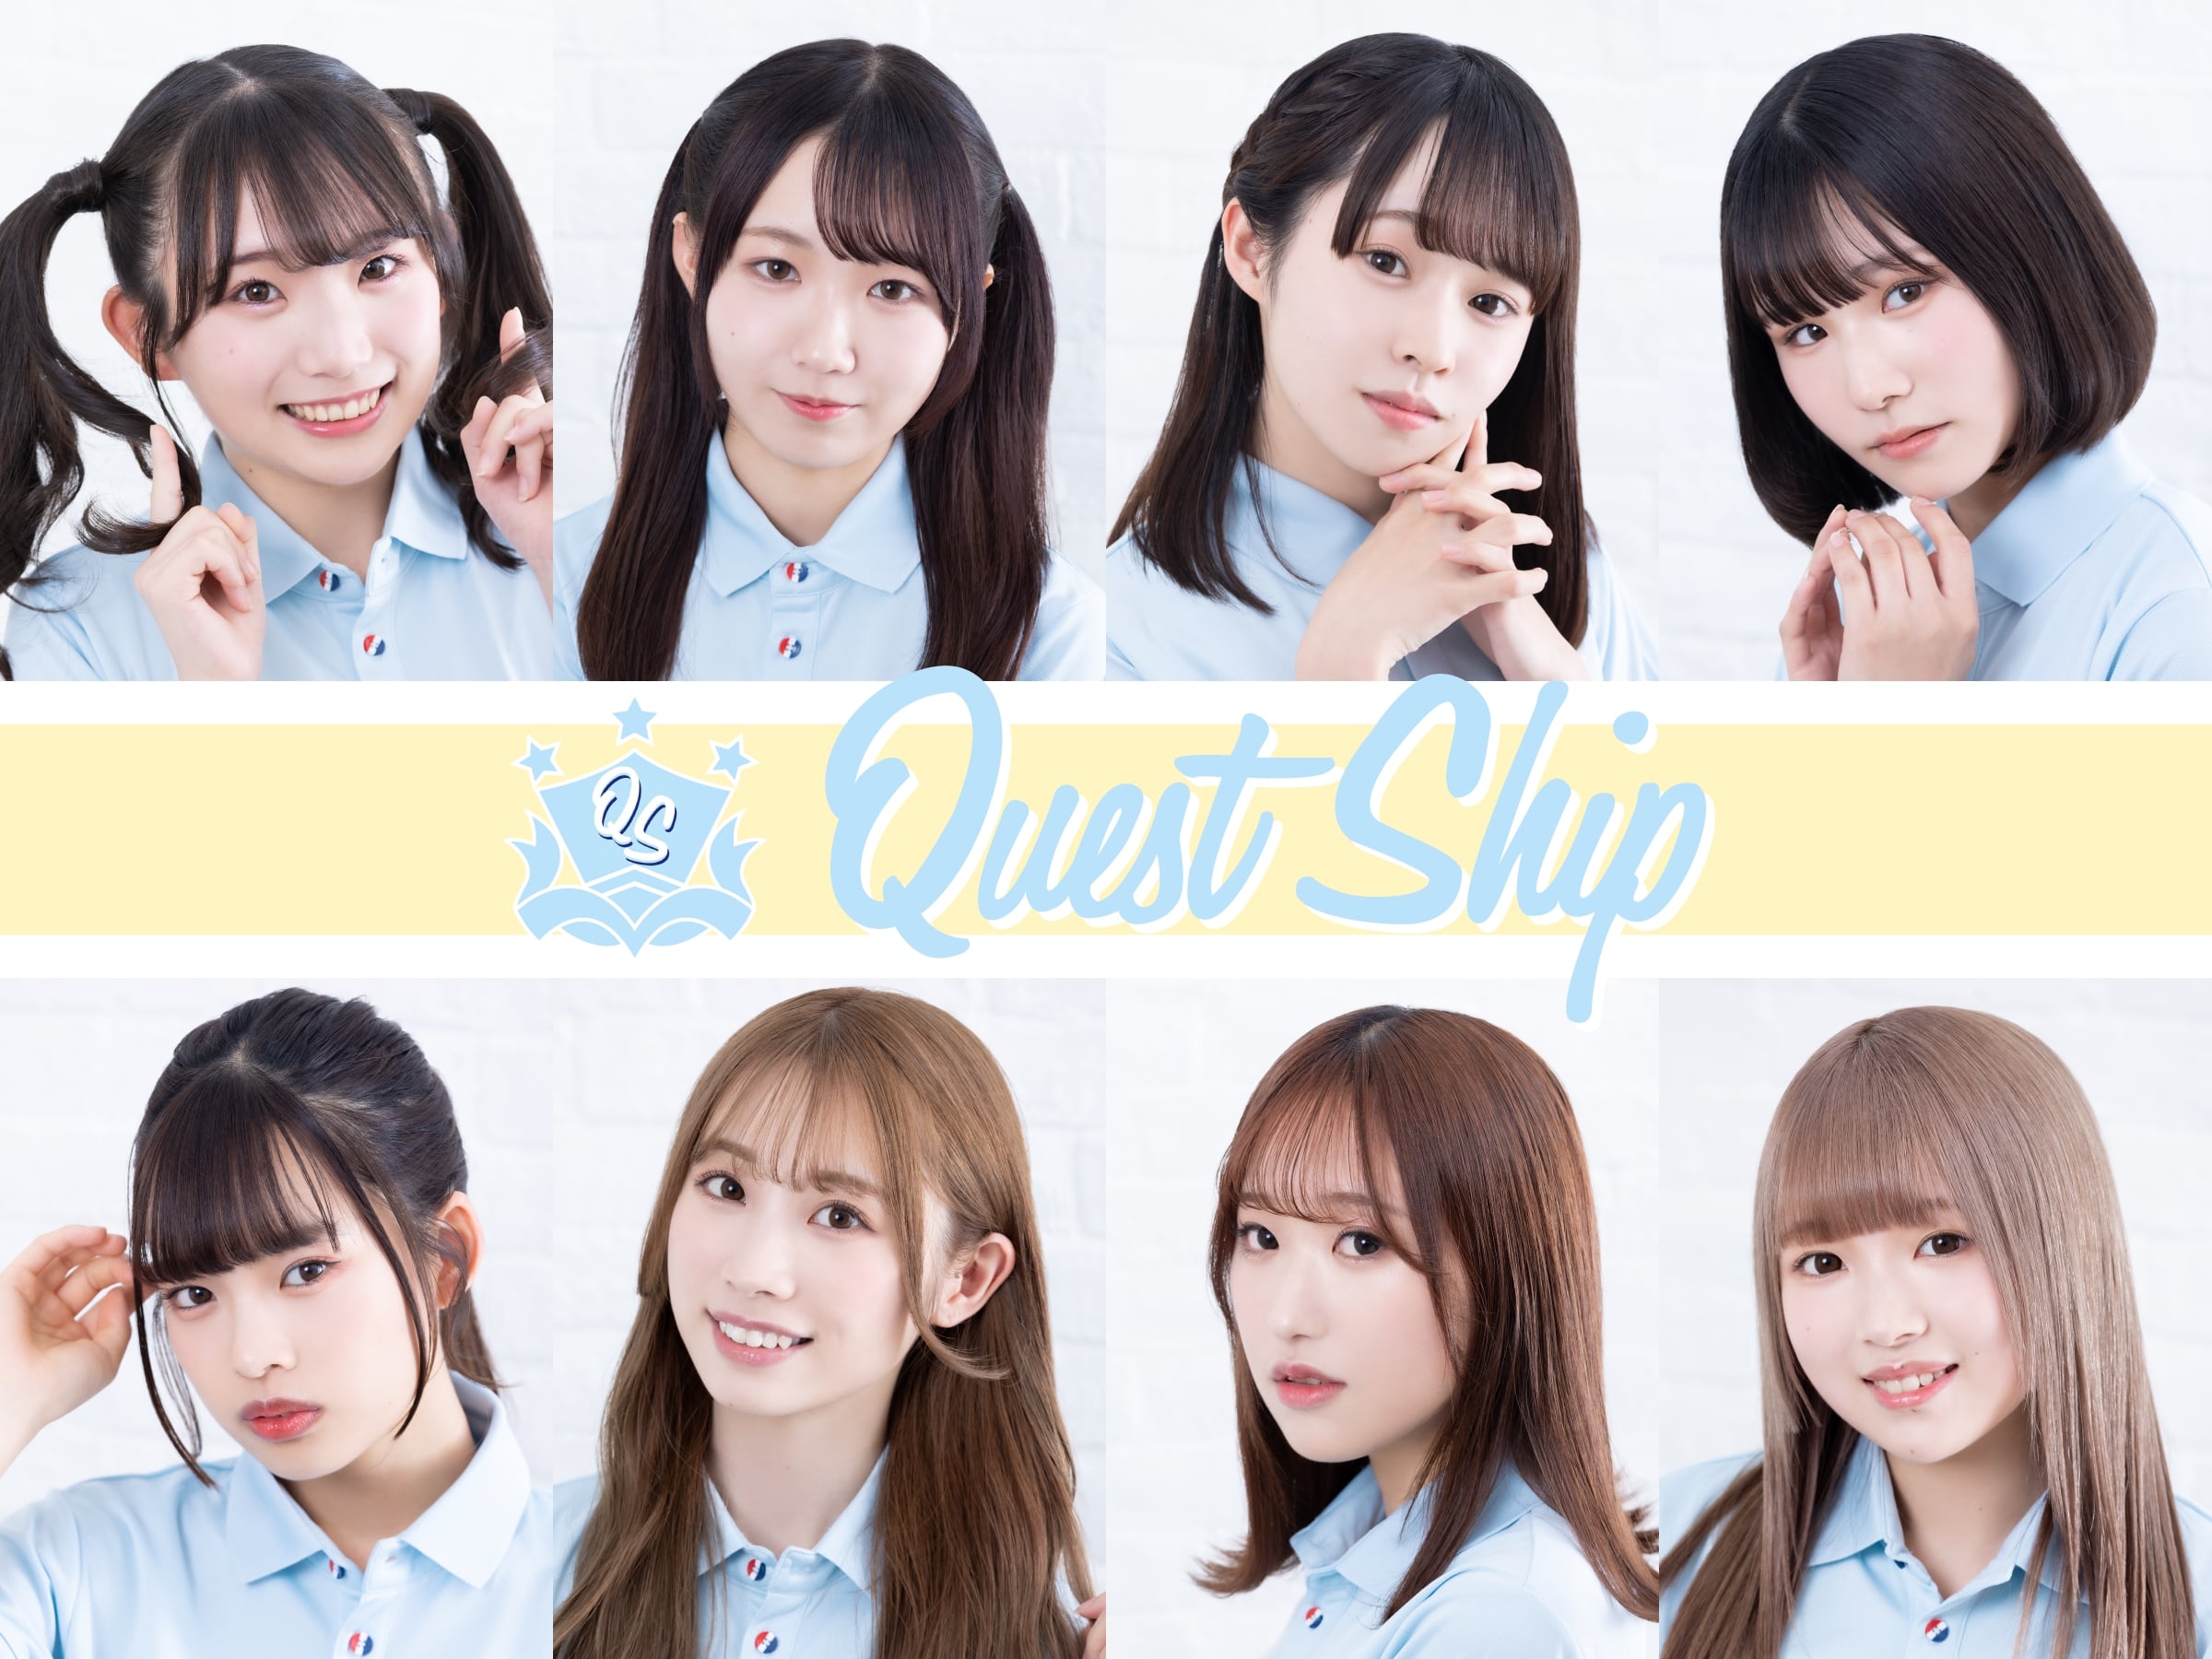 新アイドルグループ「Quest Ship」が初の有観客お披露目特番に初出演！！ ：Quest Ship